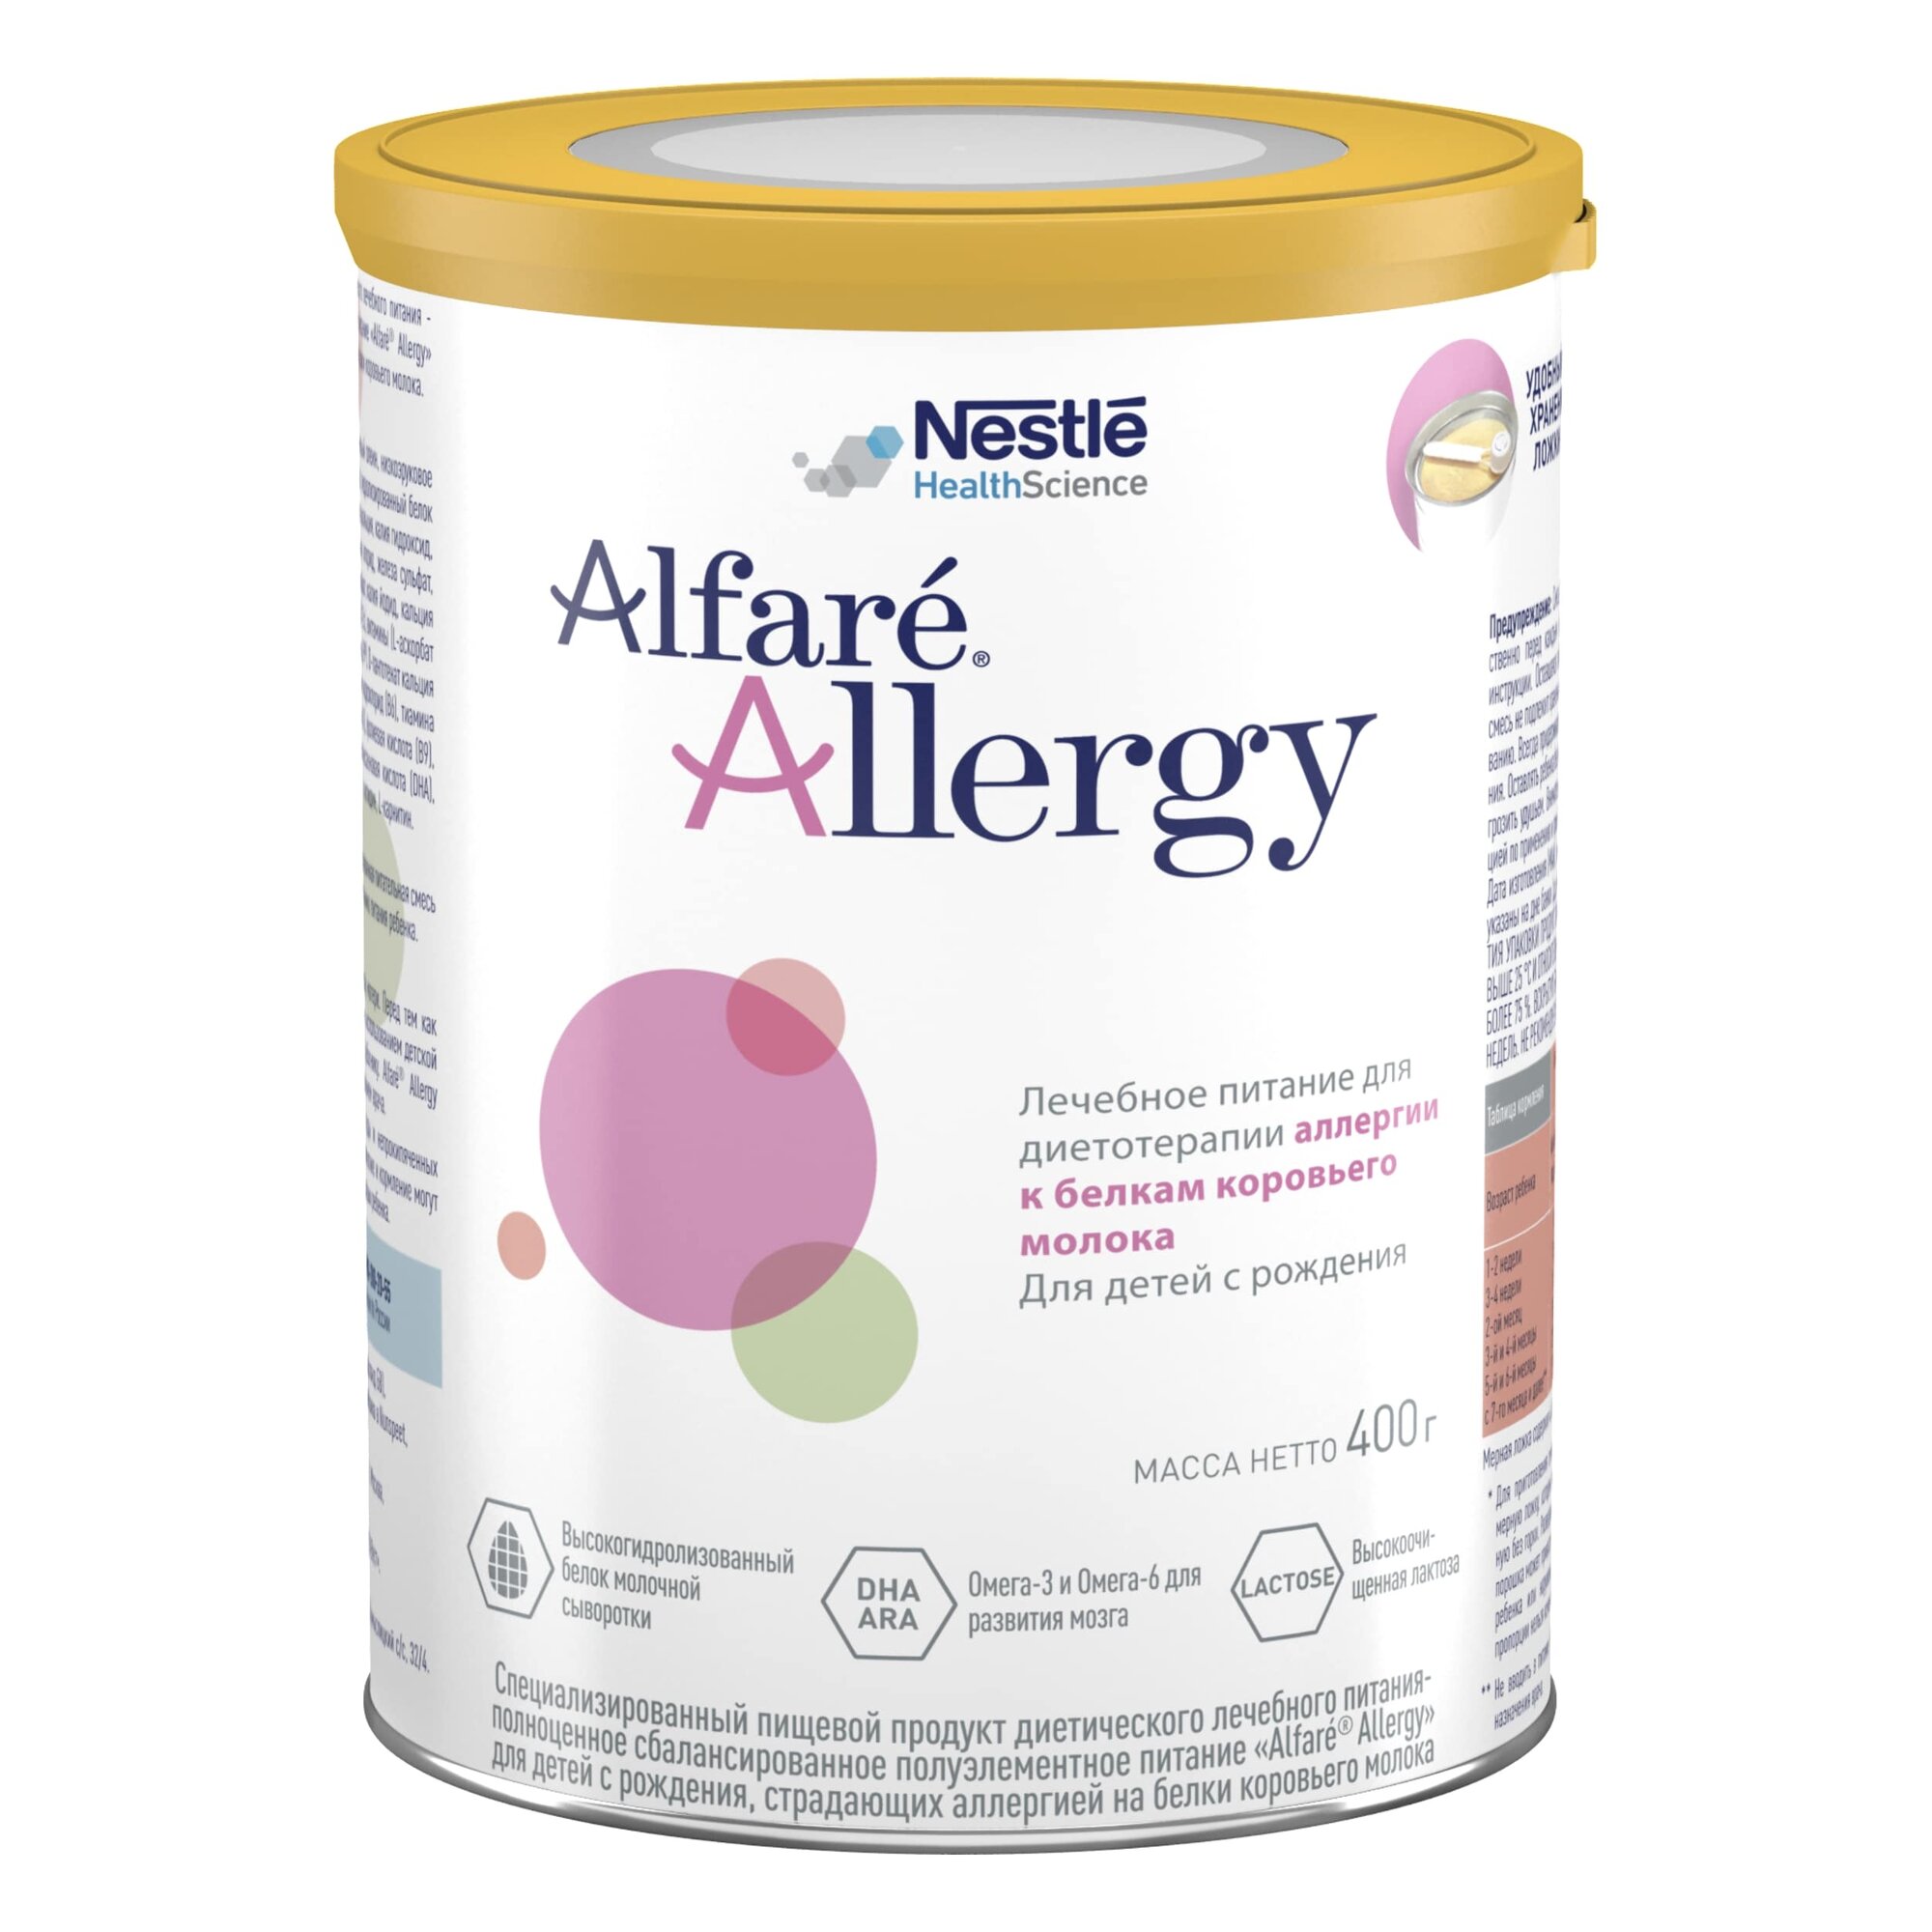 Смесь Alfare (Nestle) Allergy, при аллергии на белок коровьего молока (АБКМ), с рождения, 400 г